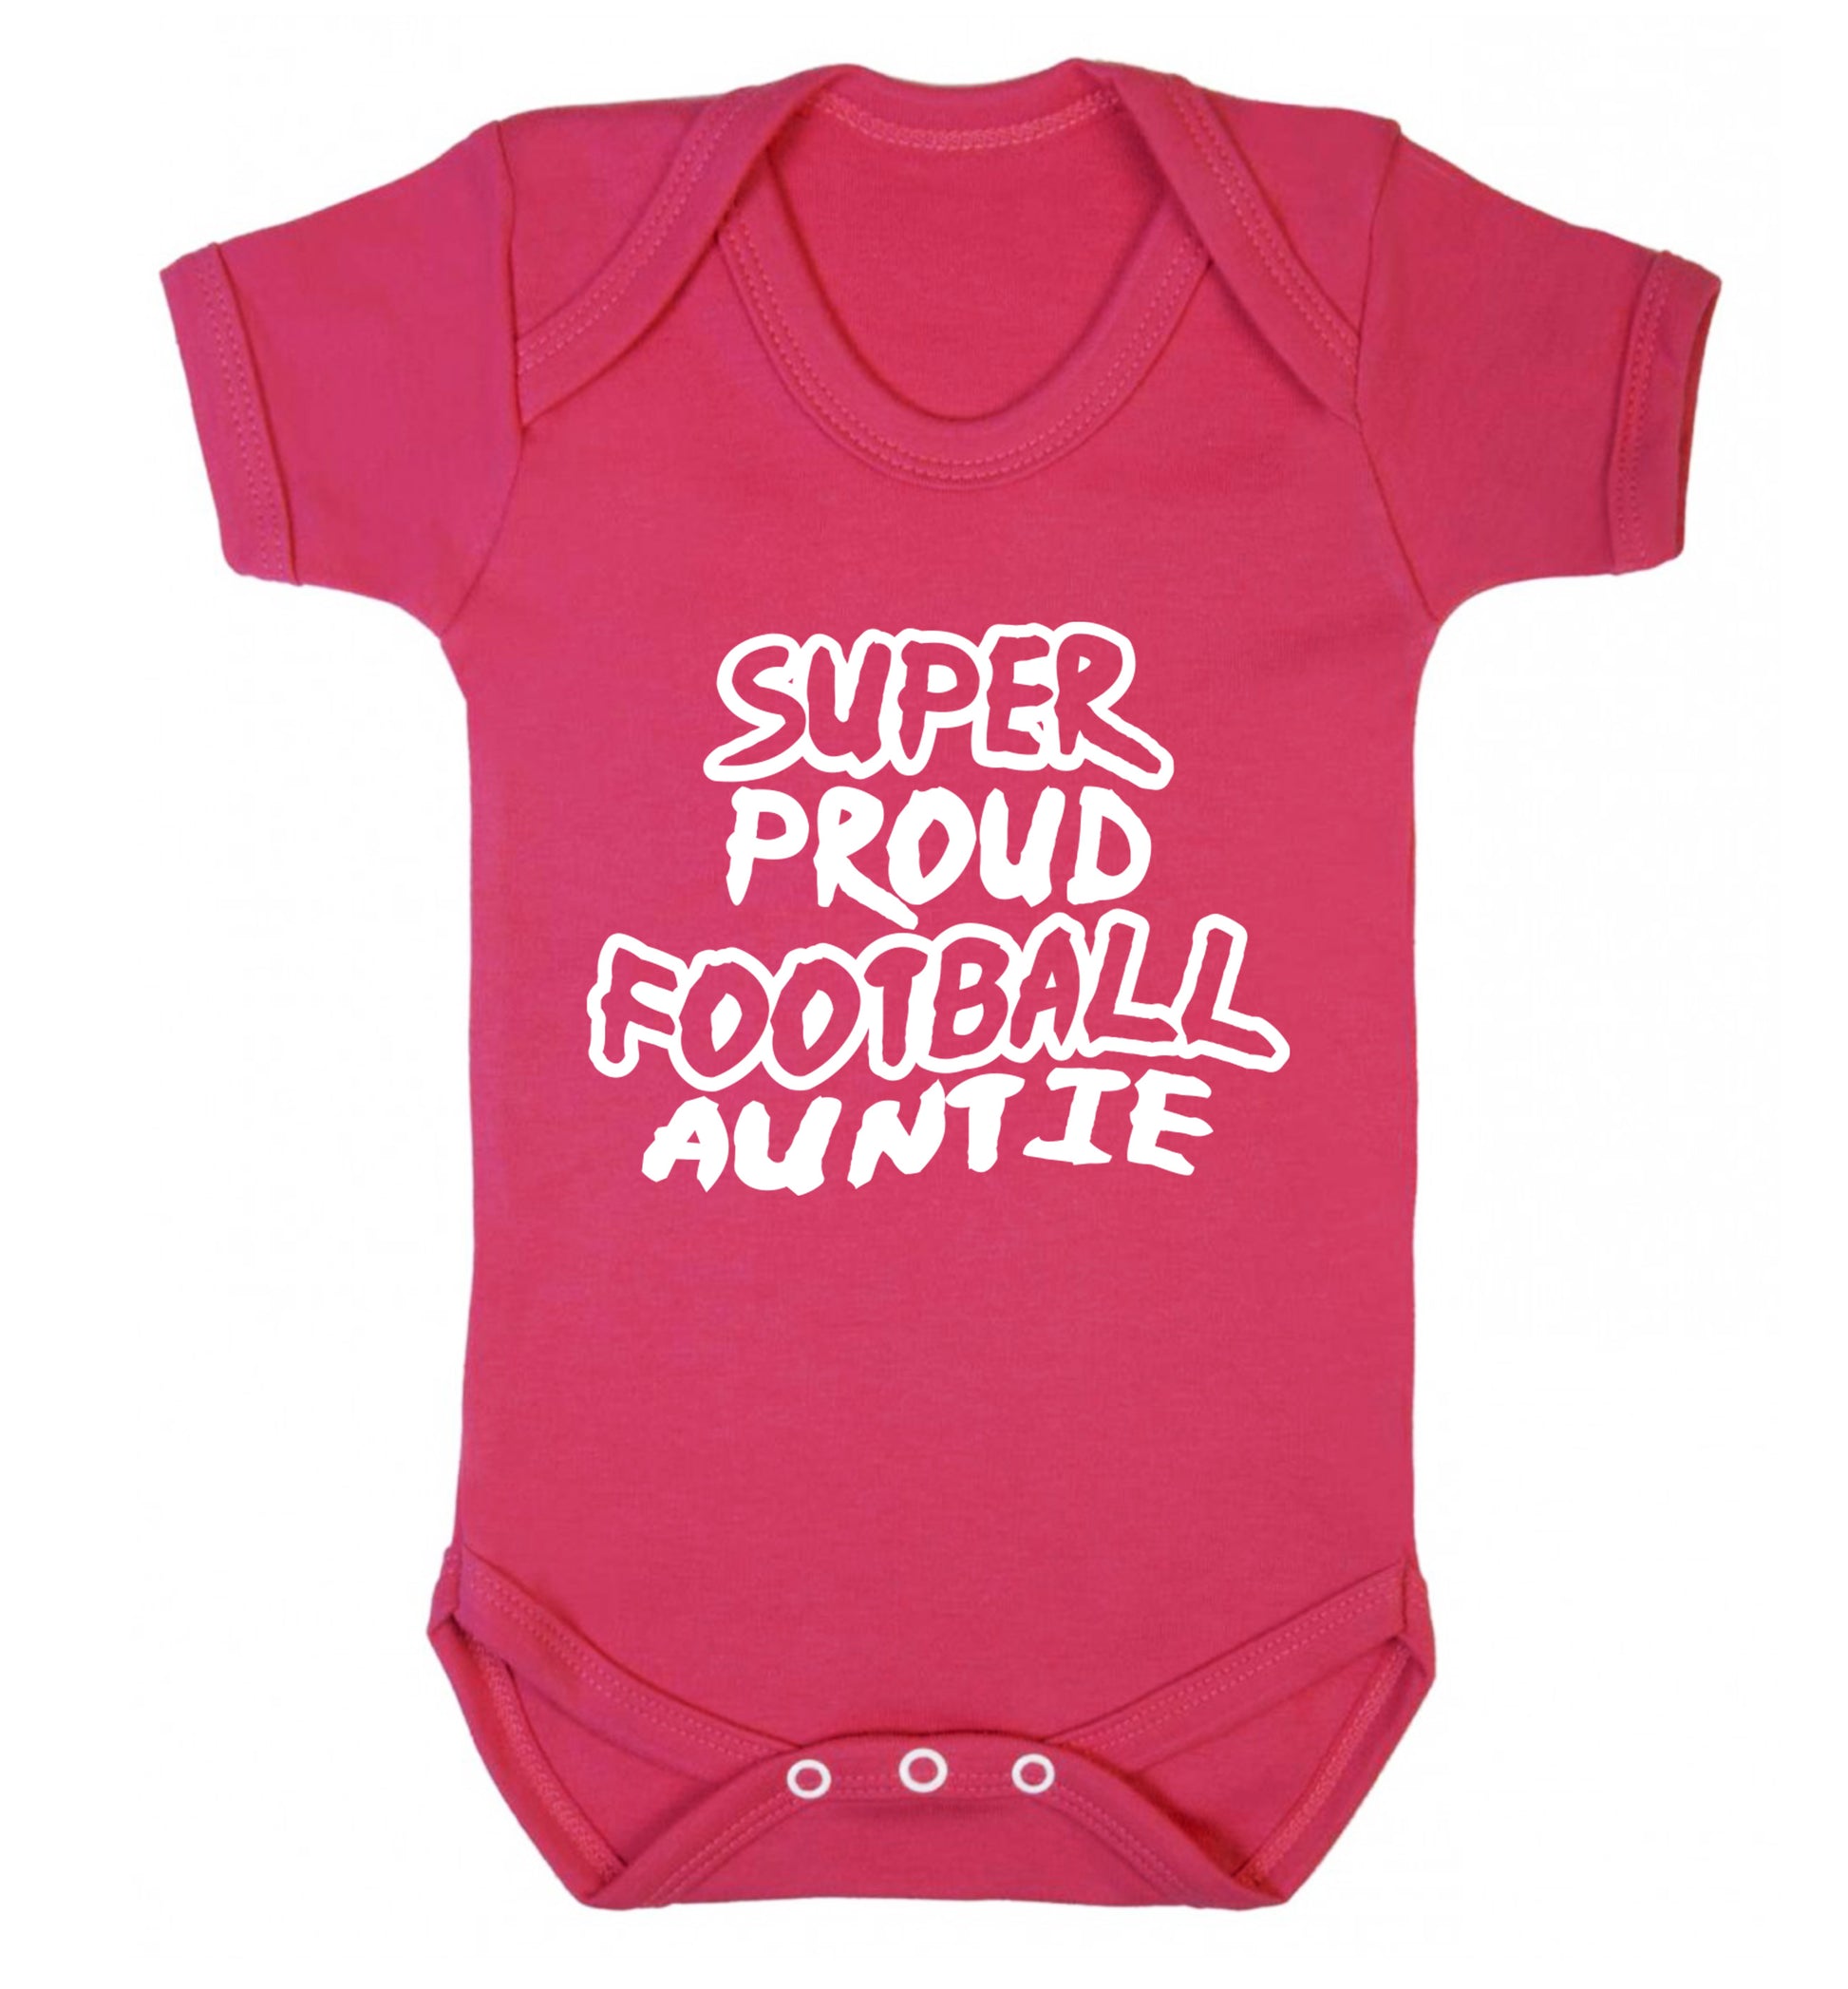 Super proud football auntie Baby Vest dark pink 18-24 months